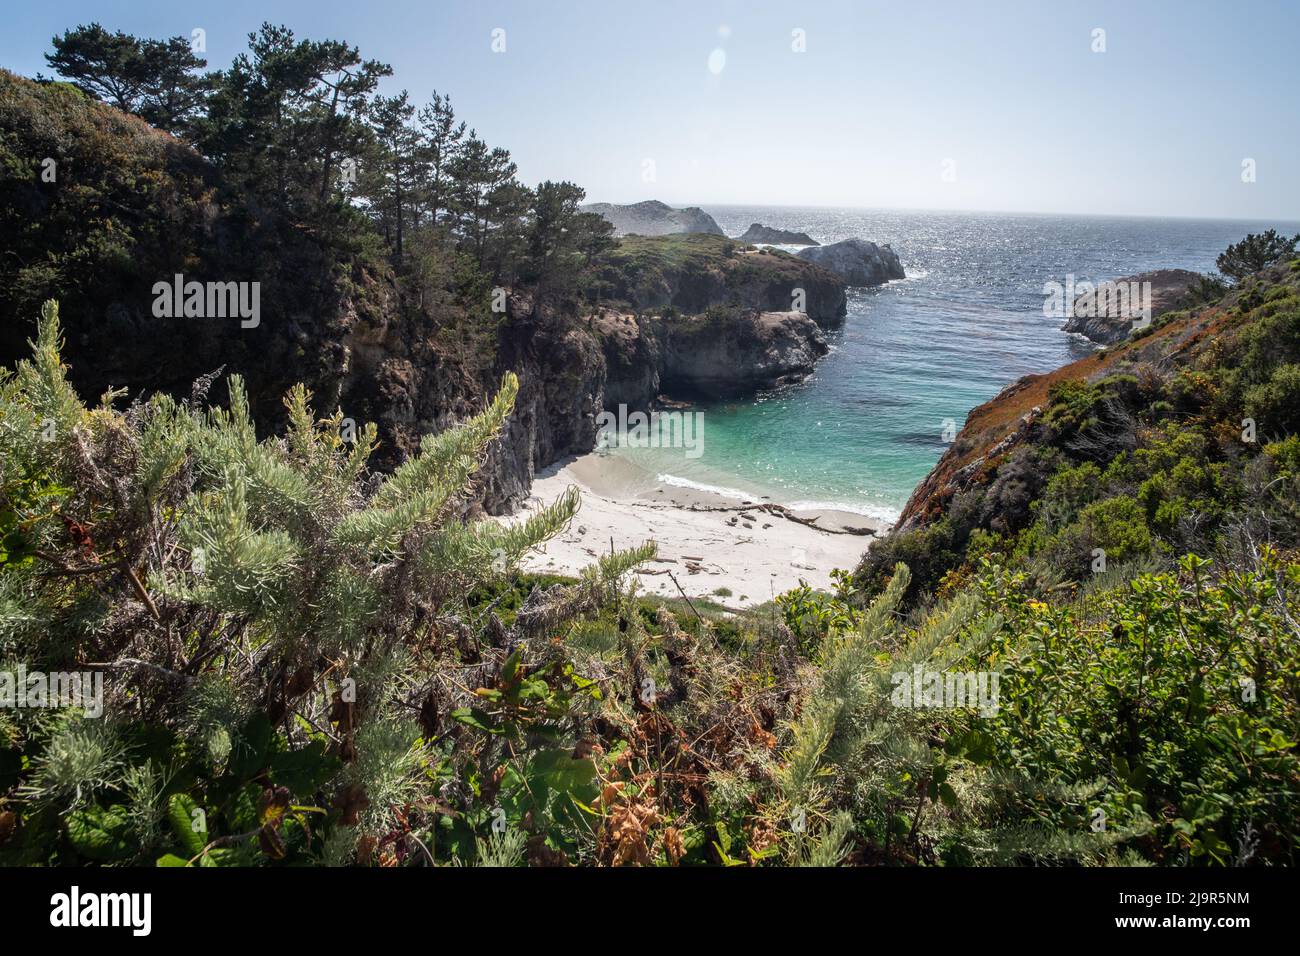 La côte de la réserve d'État de point Lobos à Monterey, en Californie, est un paysage incroyablement beau avec des falaises, des eaux turquoise et des arbres. Banque D'Images